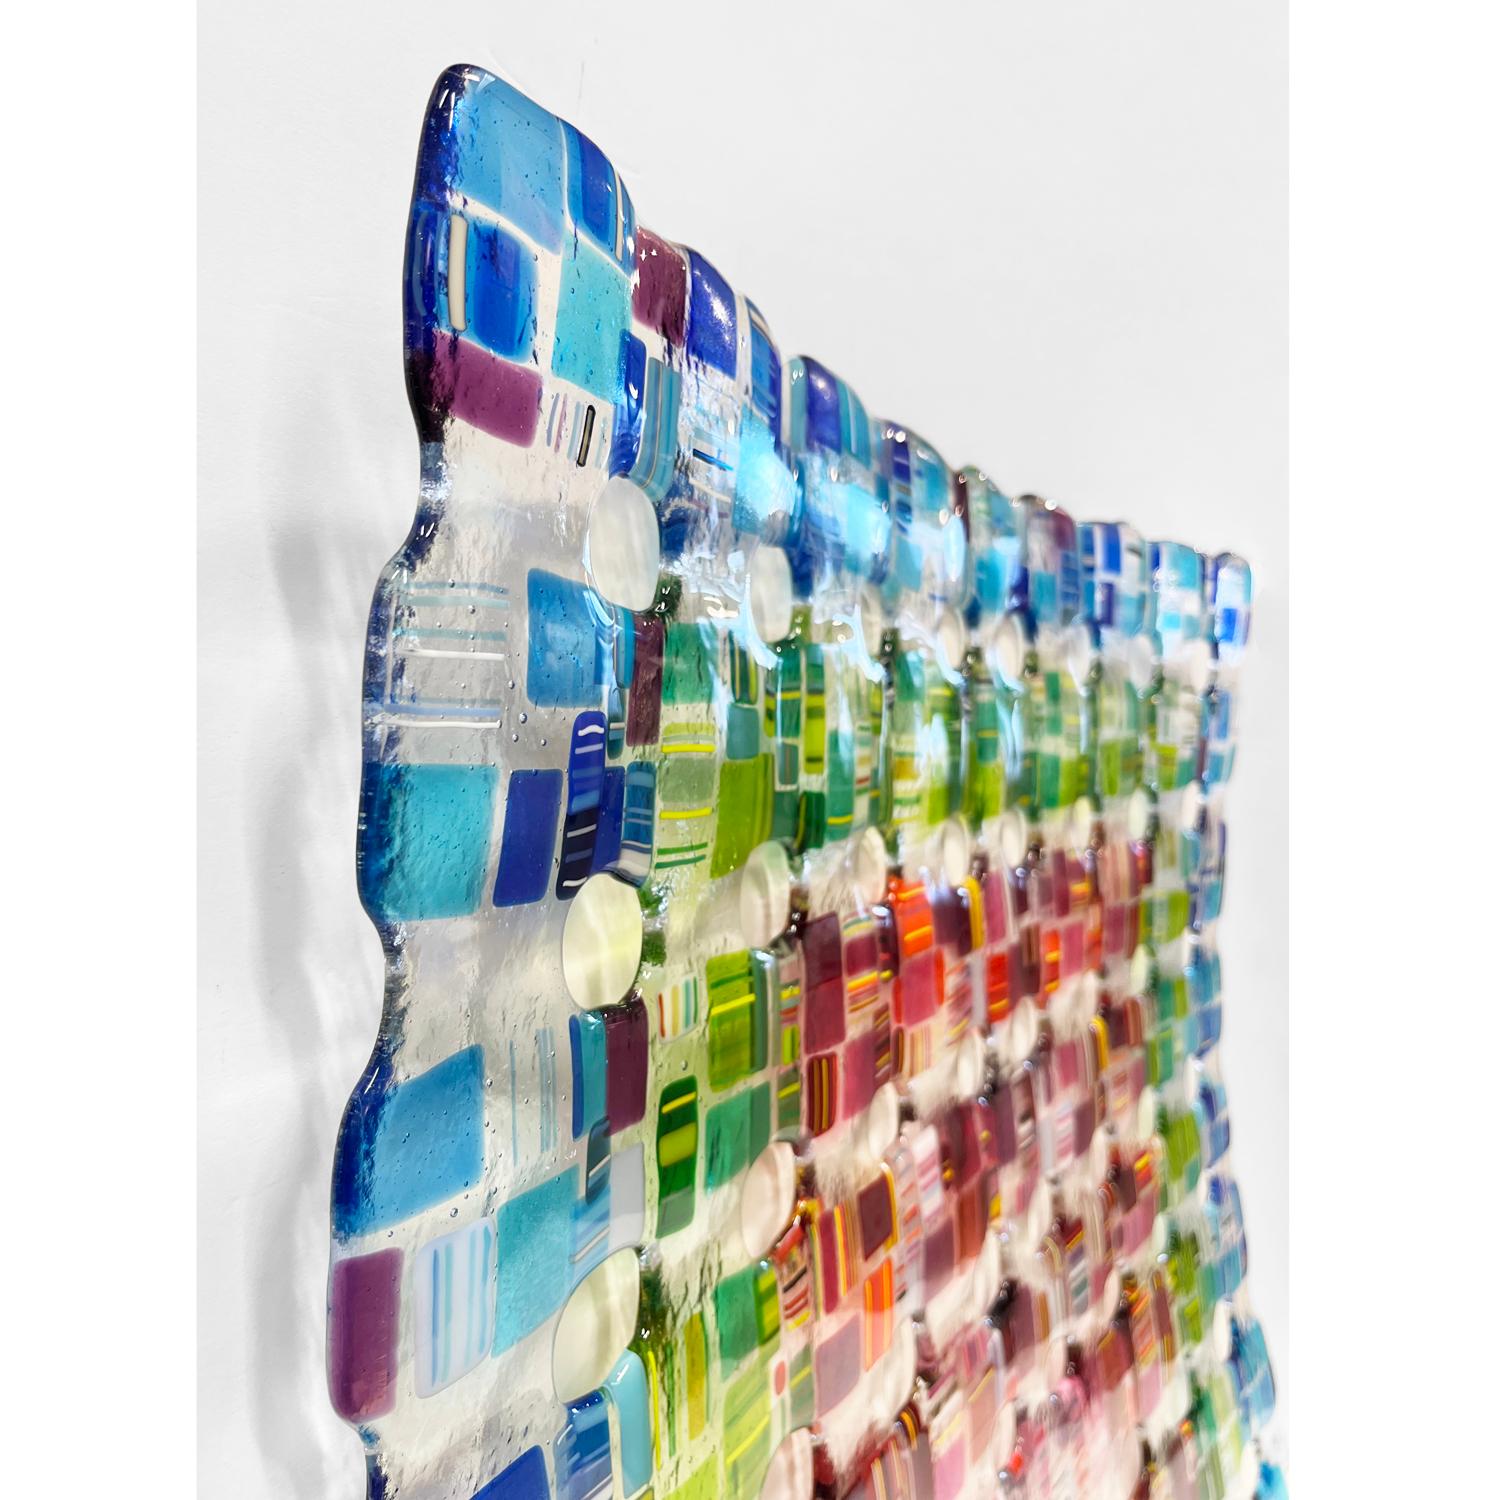 Cette étonnante sculpture murale en verre fusionné de Renato Foti est entièrement composée de verre. La sculpture 3D peut être suspendue sous forme de carré ou de losange aux crochets prévus à cet effet.

Renato Foti a obtenu sa licence en